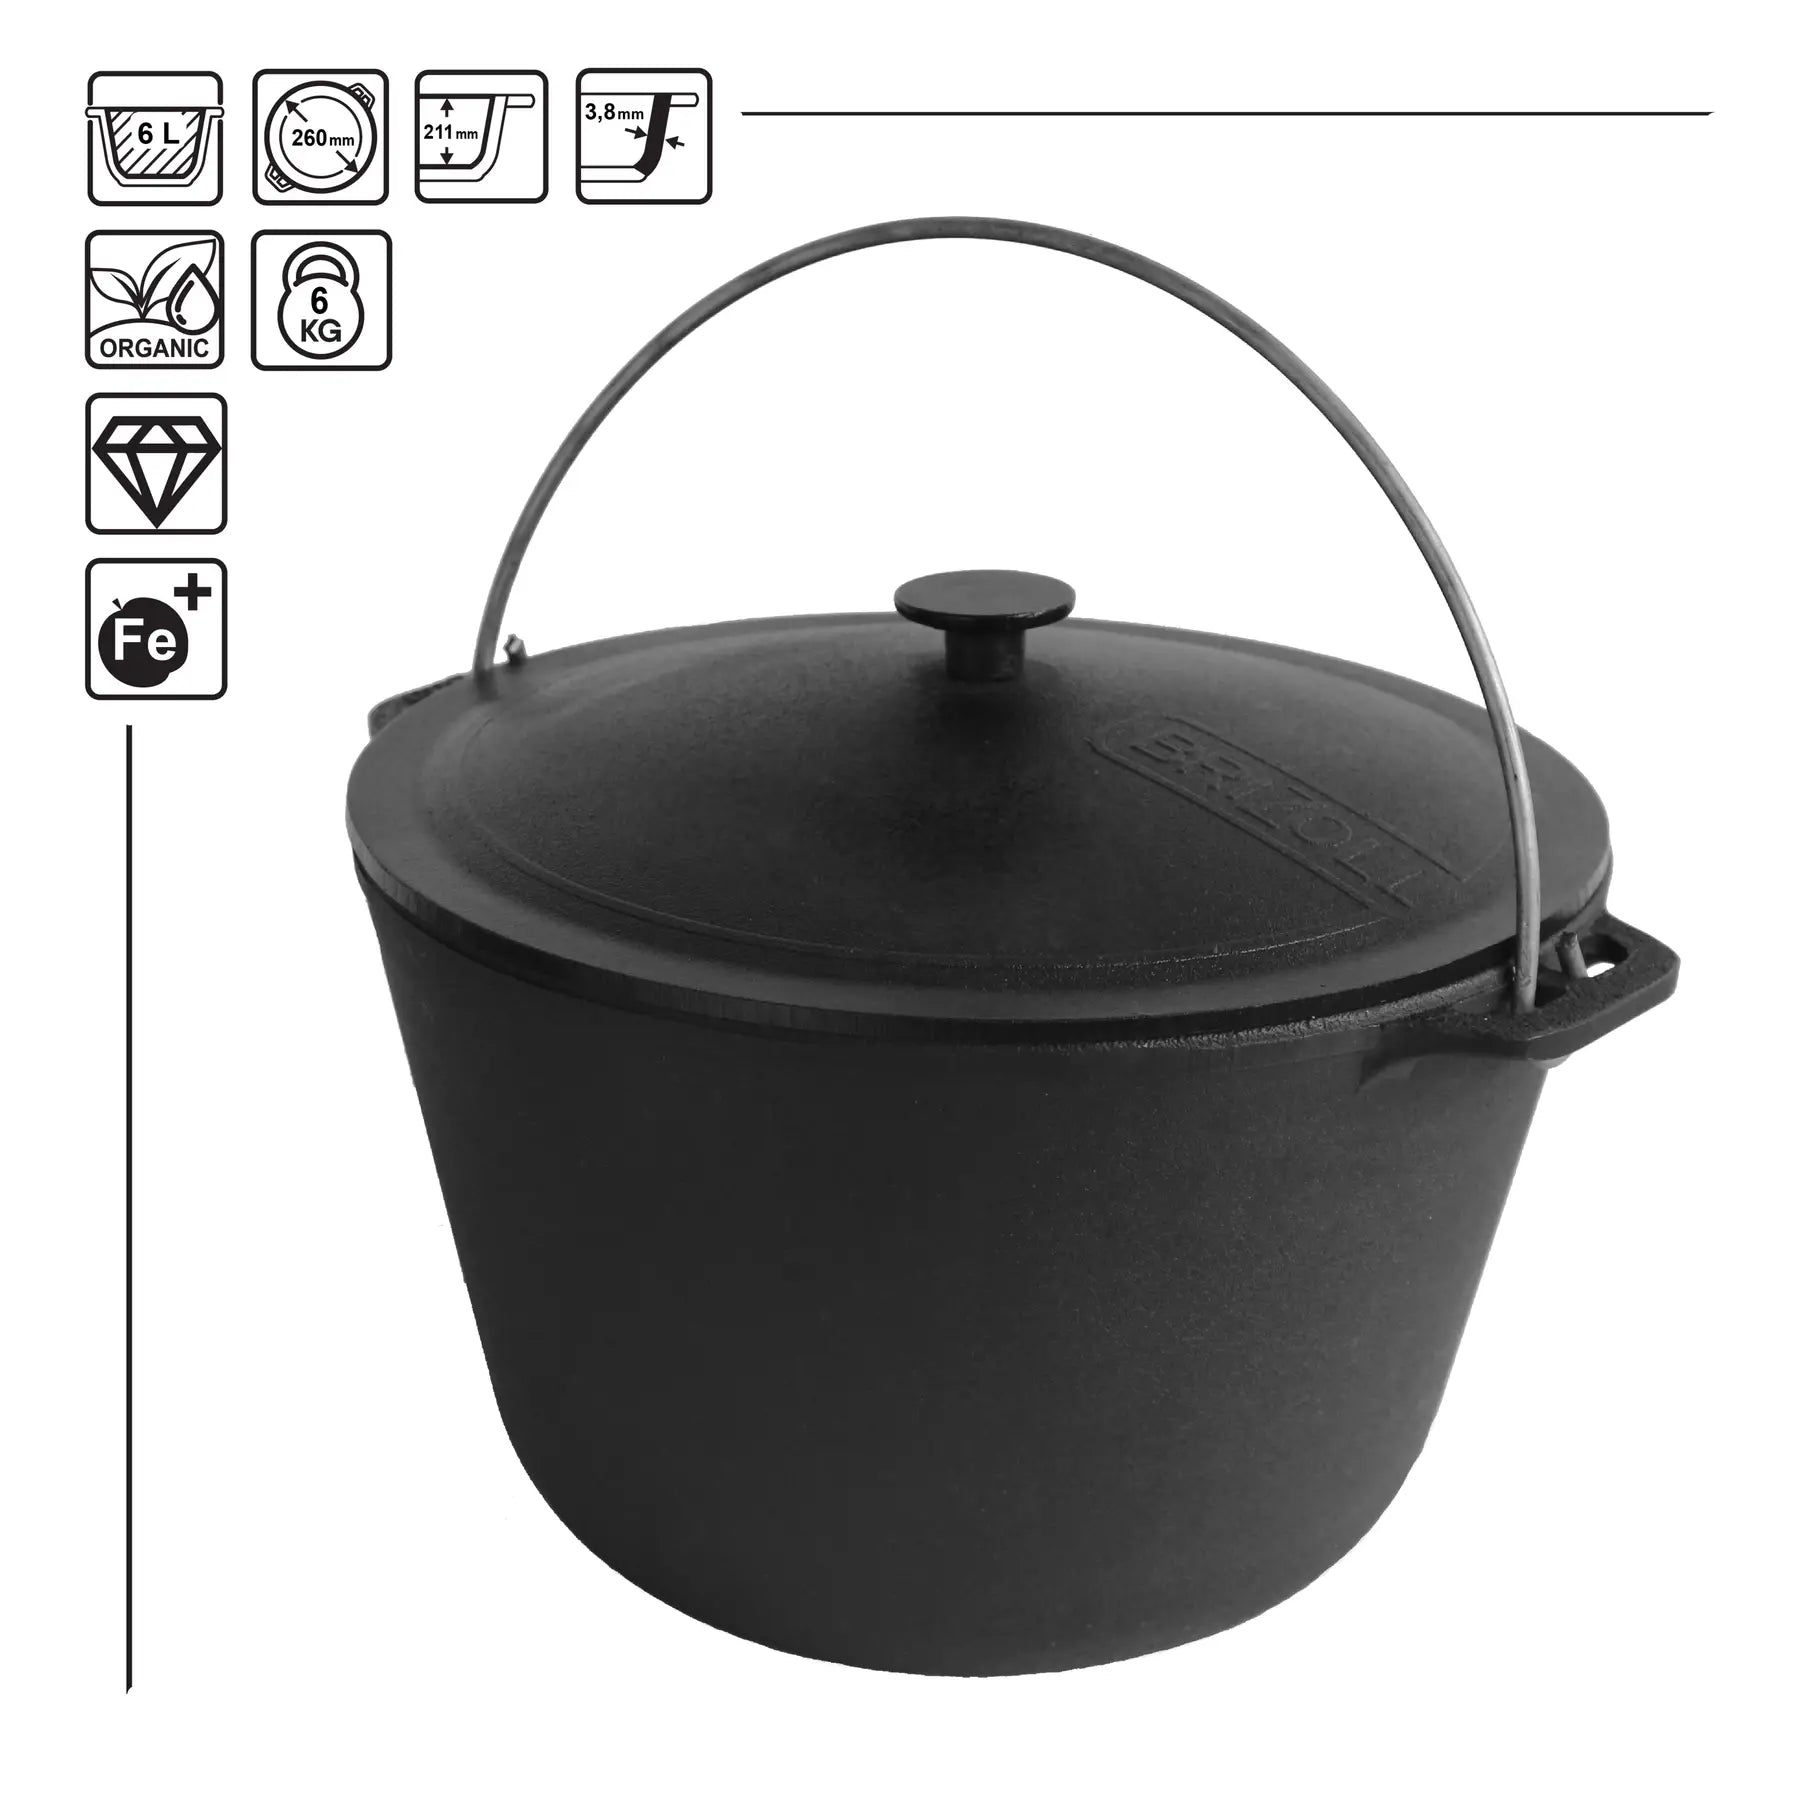 6.34 Quarts Dutch Oven Pot with Lid, Cast Iron Cauldron Uzbek Kazan Cast Iron, Premium Camping Cookware